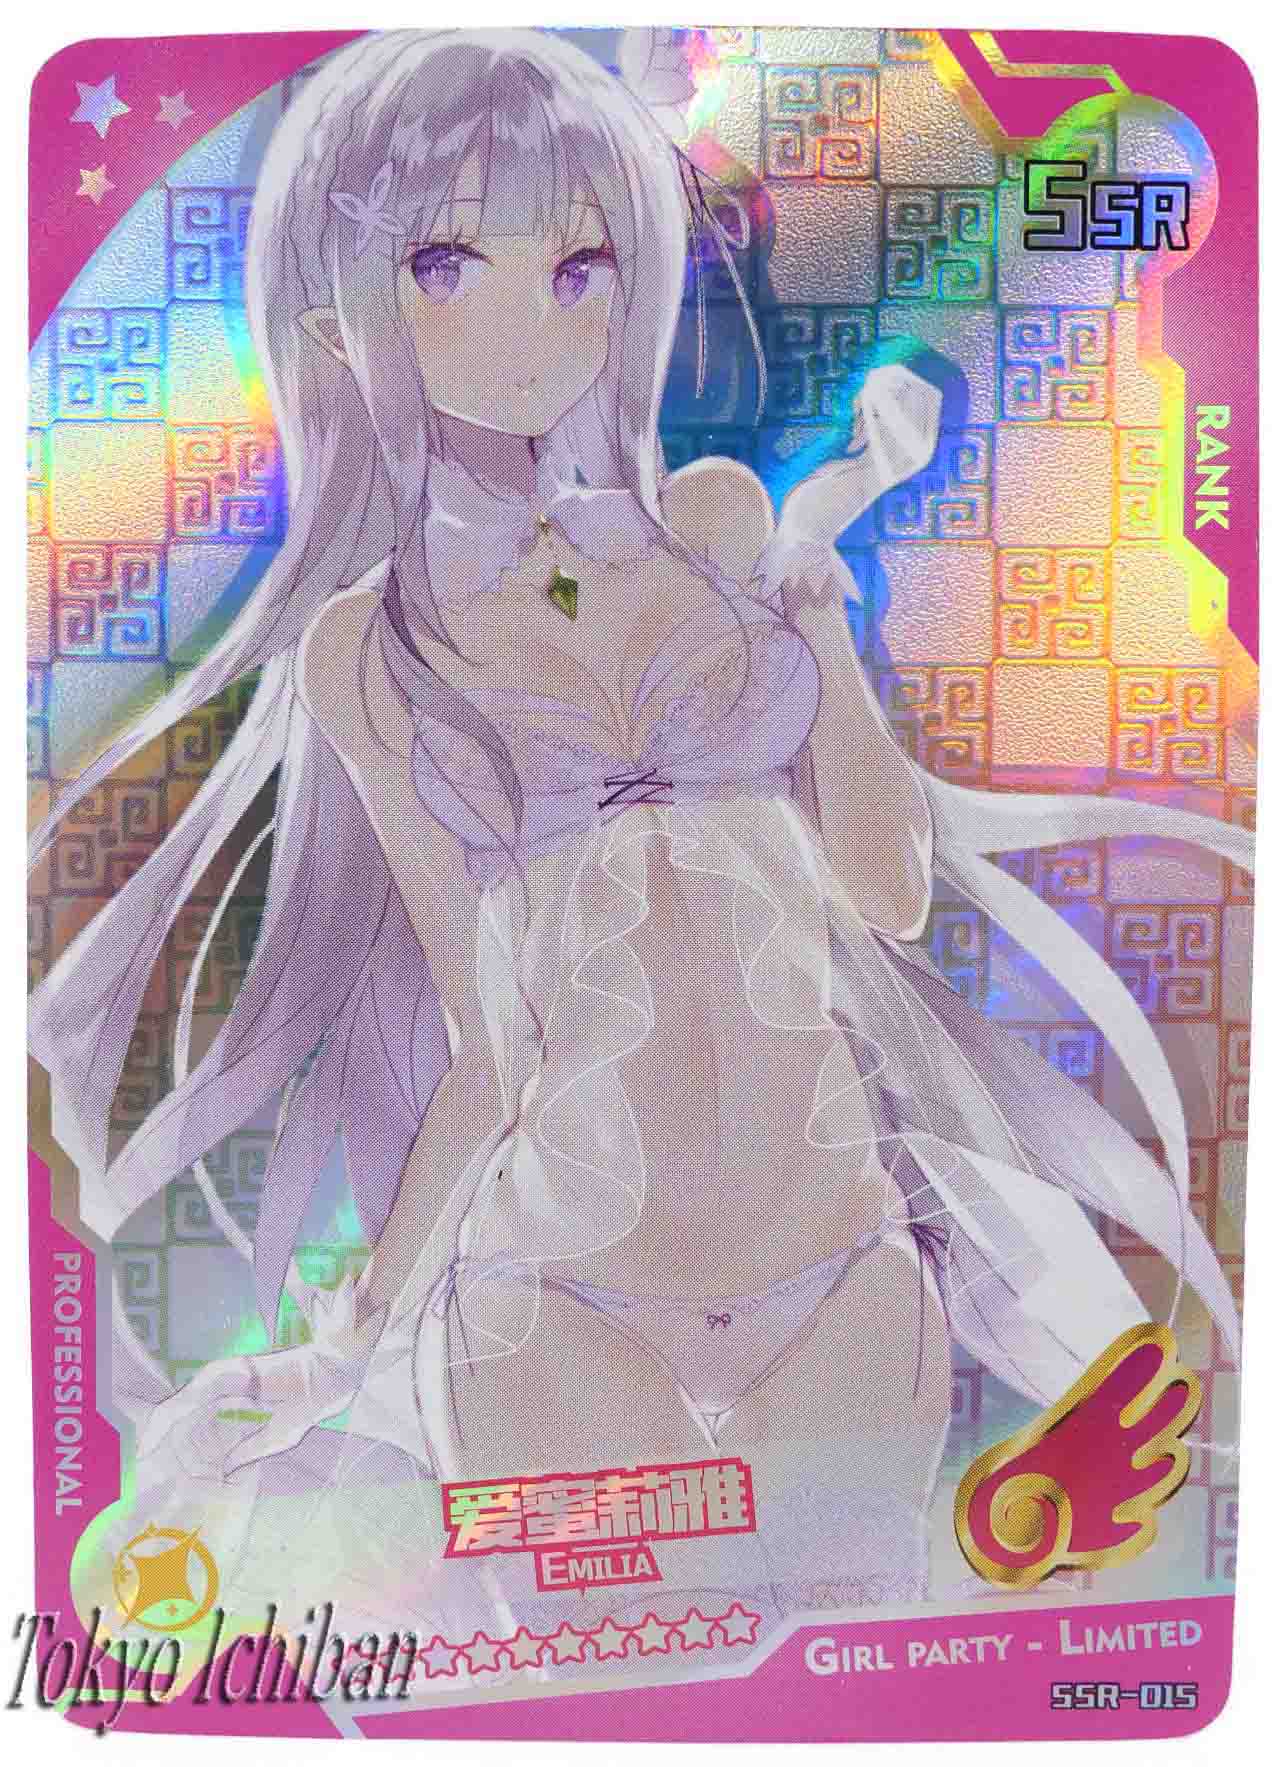 Sexy Card Re:Zero Emilia Edition Limited SSR-015